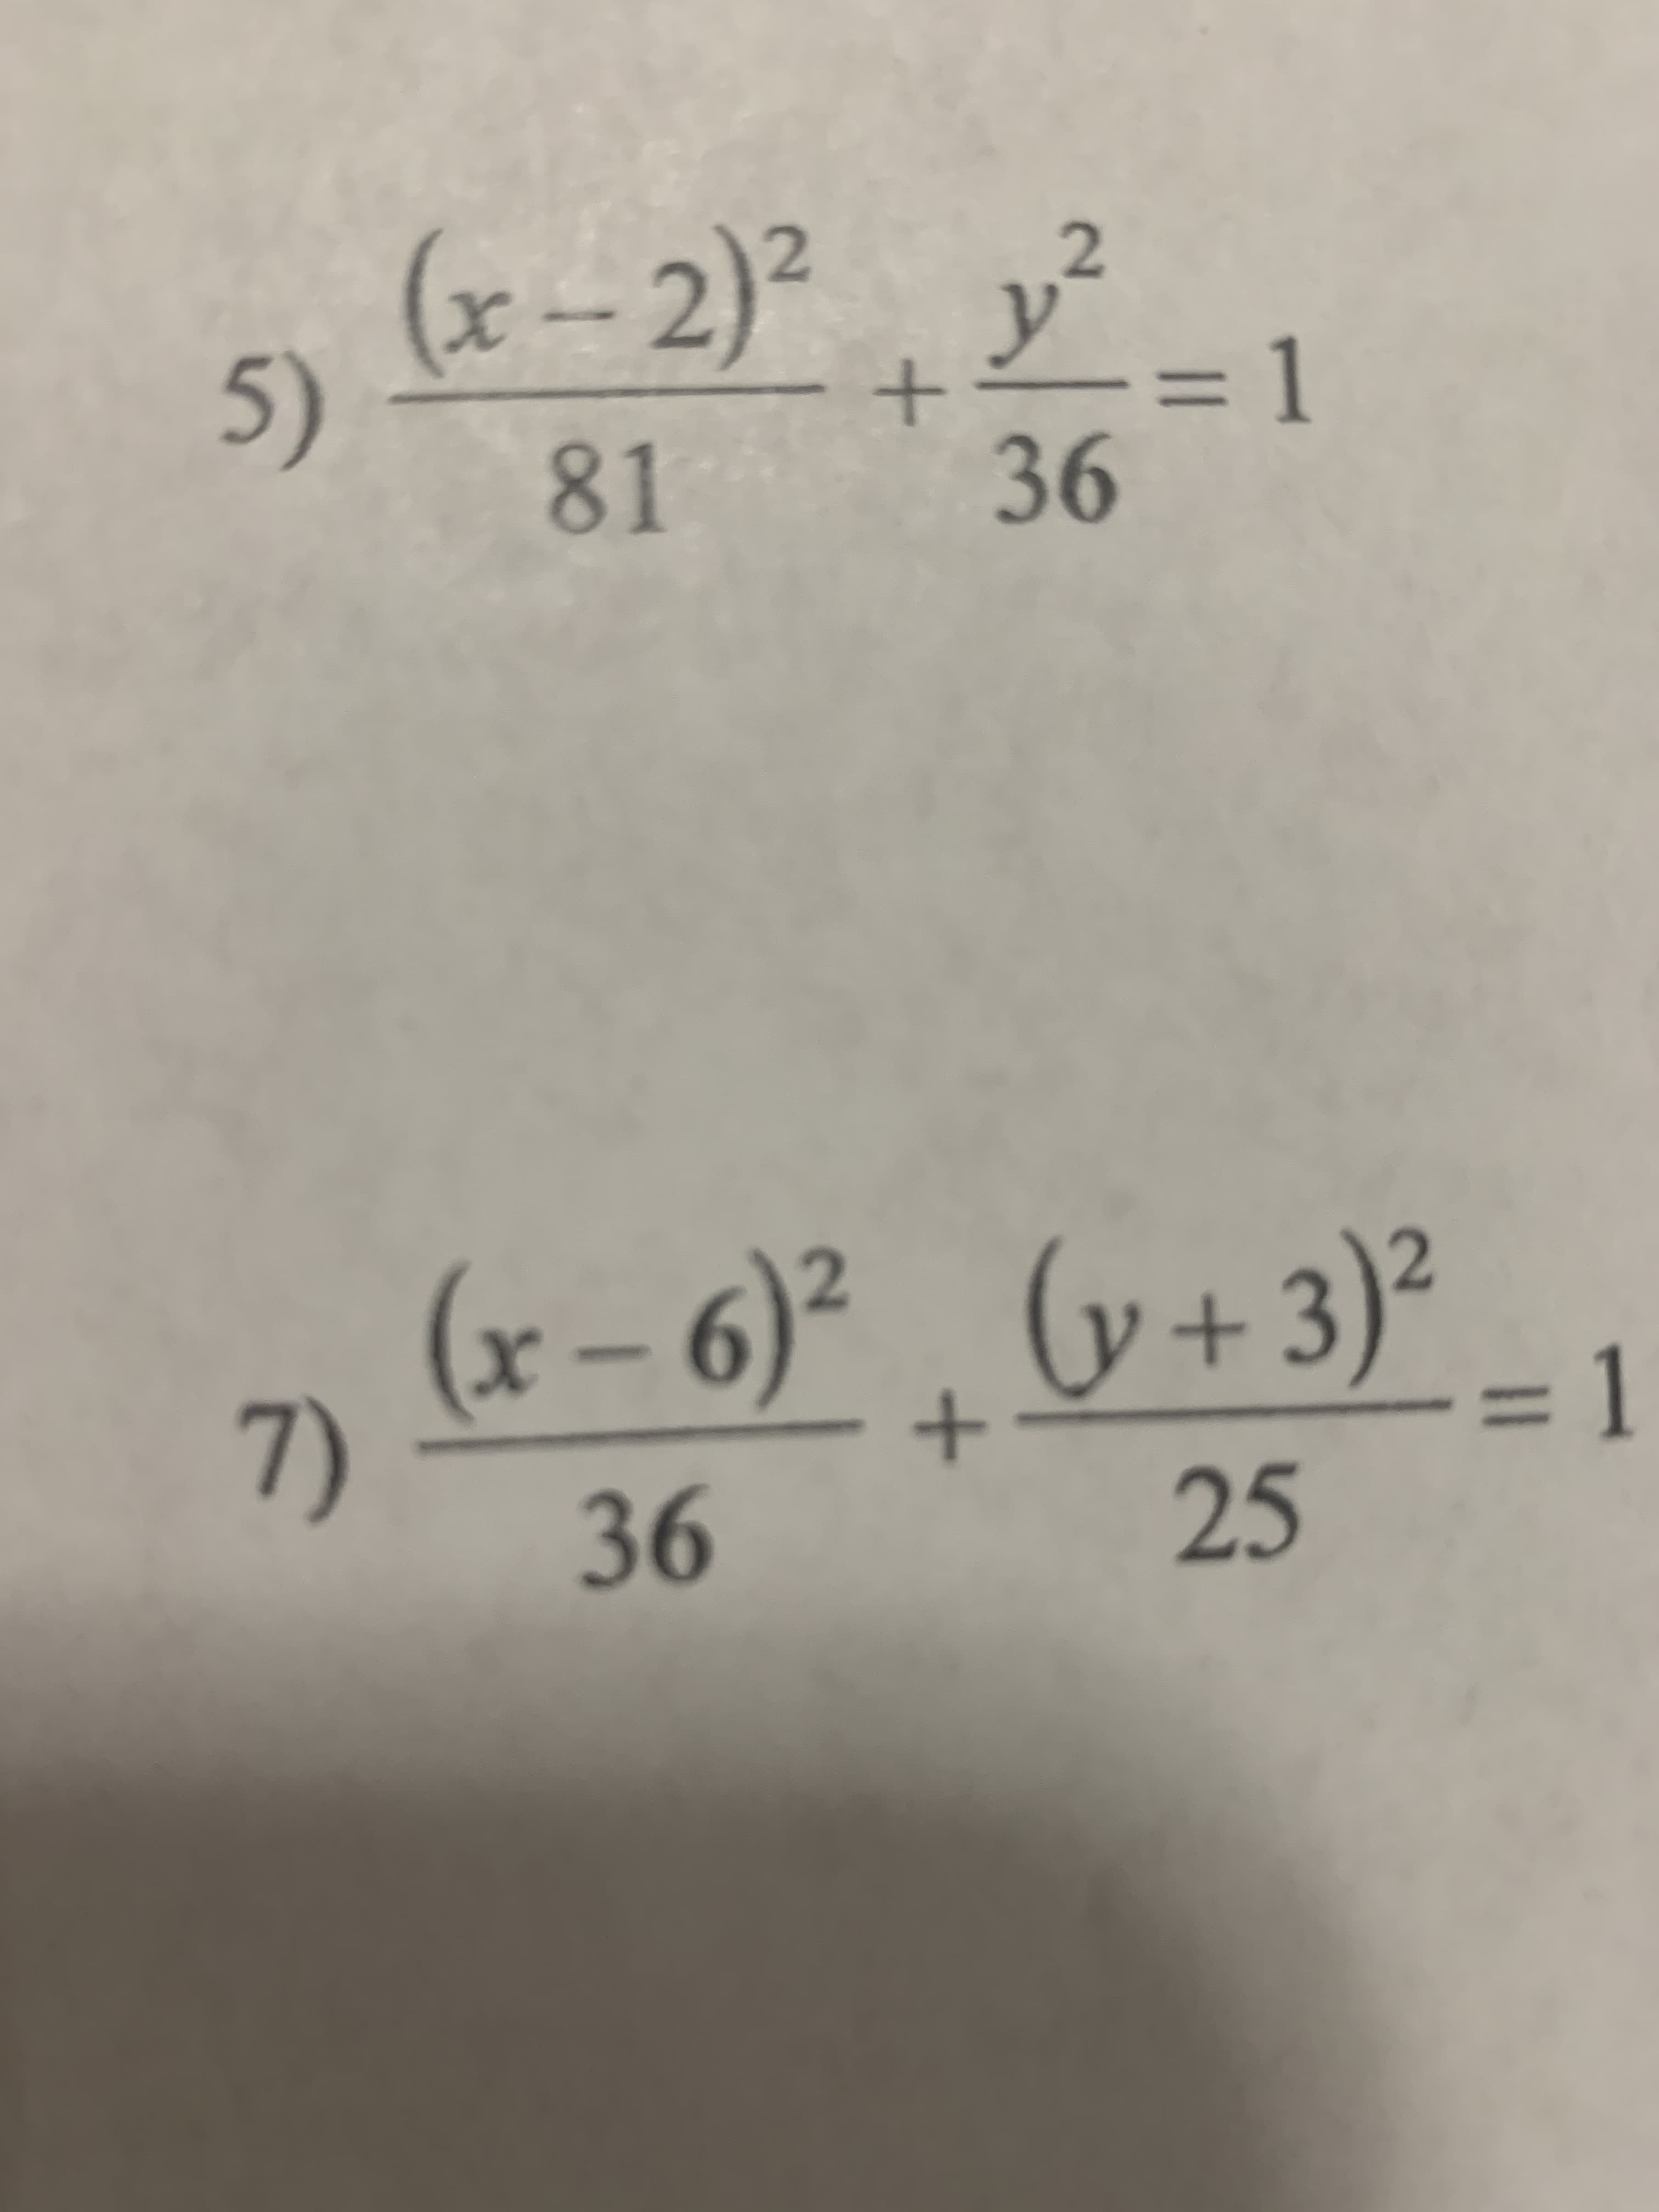 (x-2)² y²
= 1
5)
9-
(x – 6)² . (v+3)²
25
_ 1
7)
